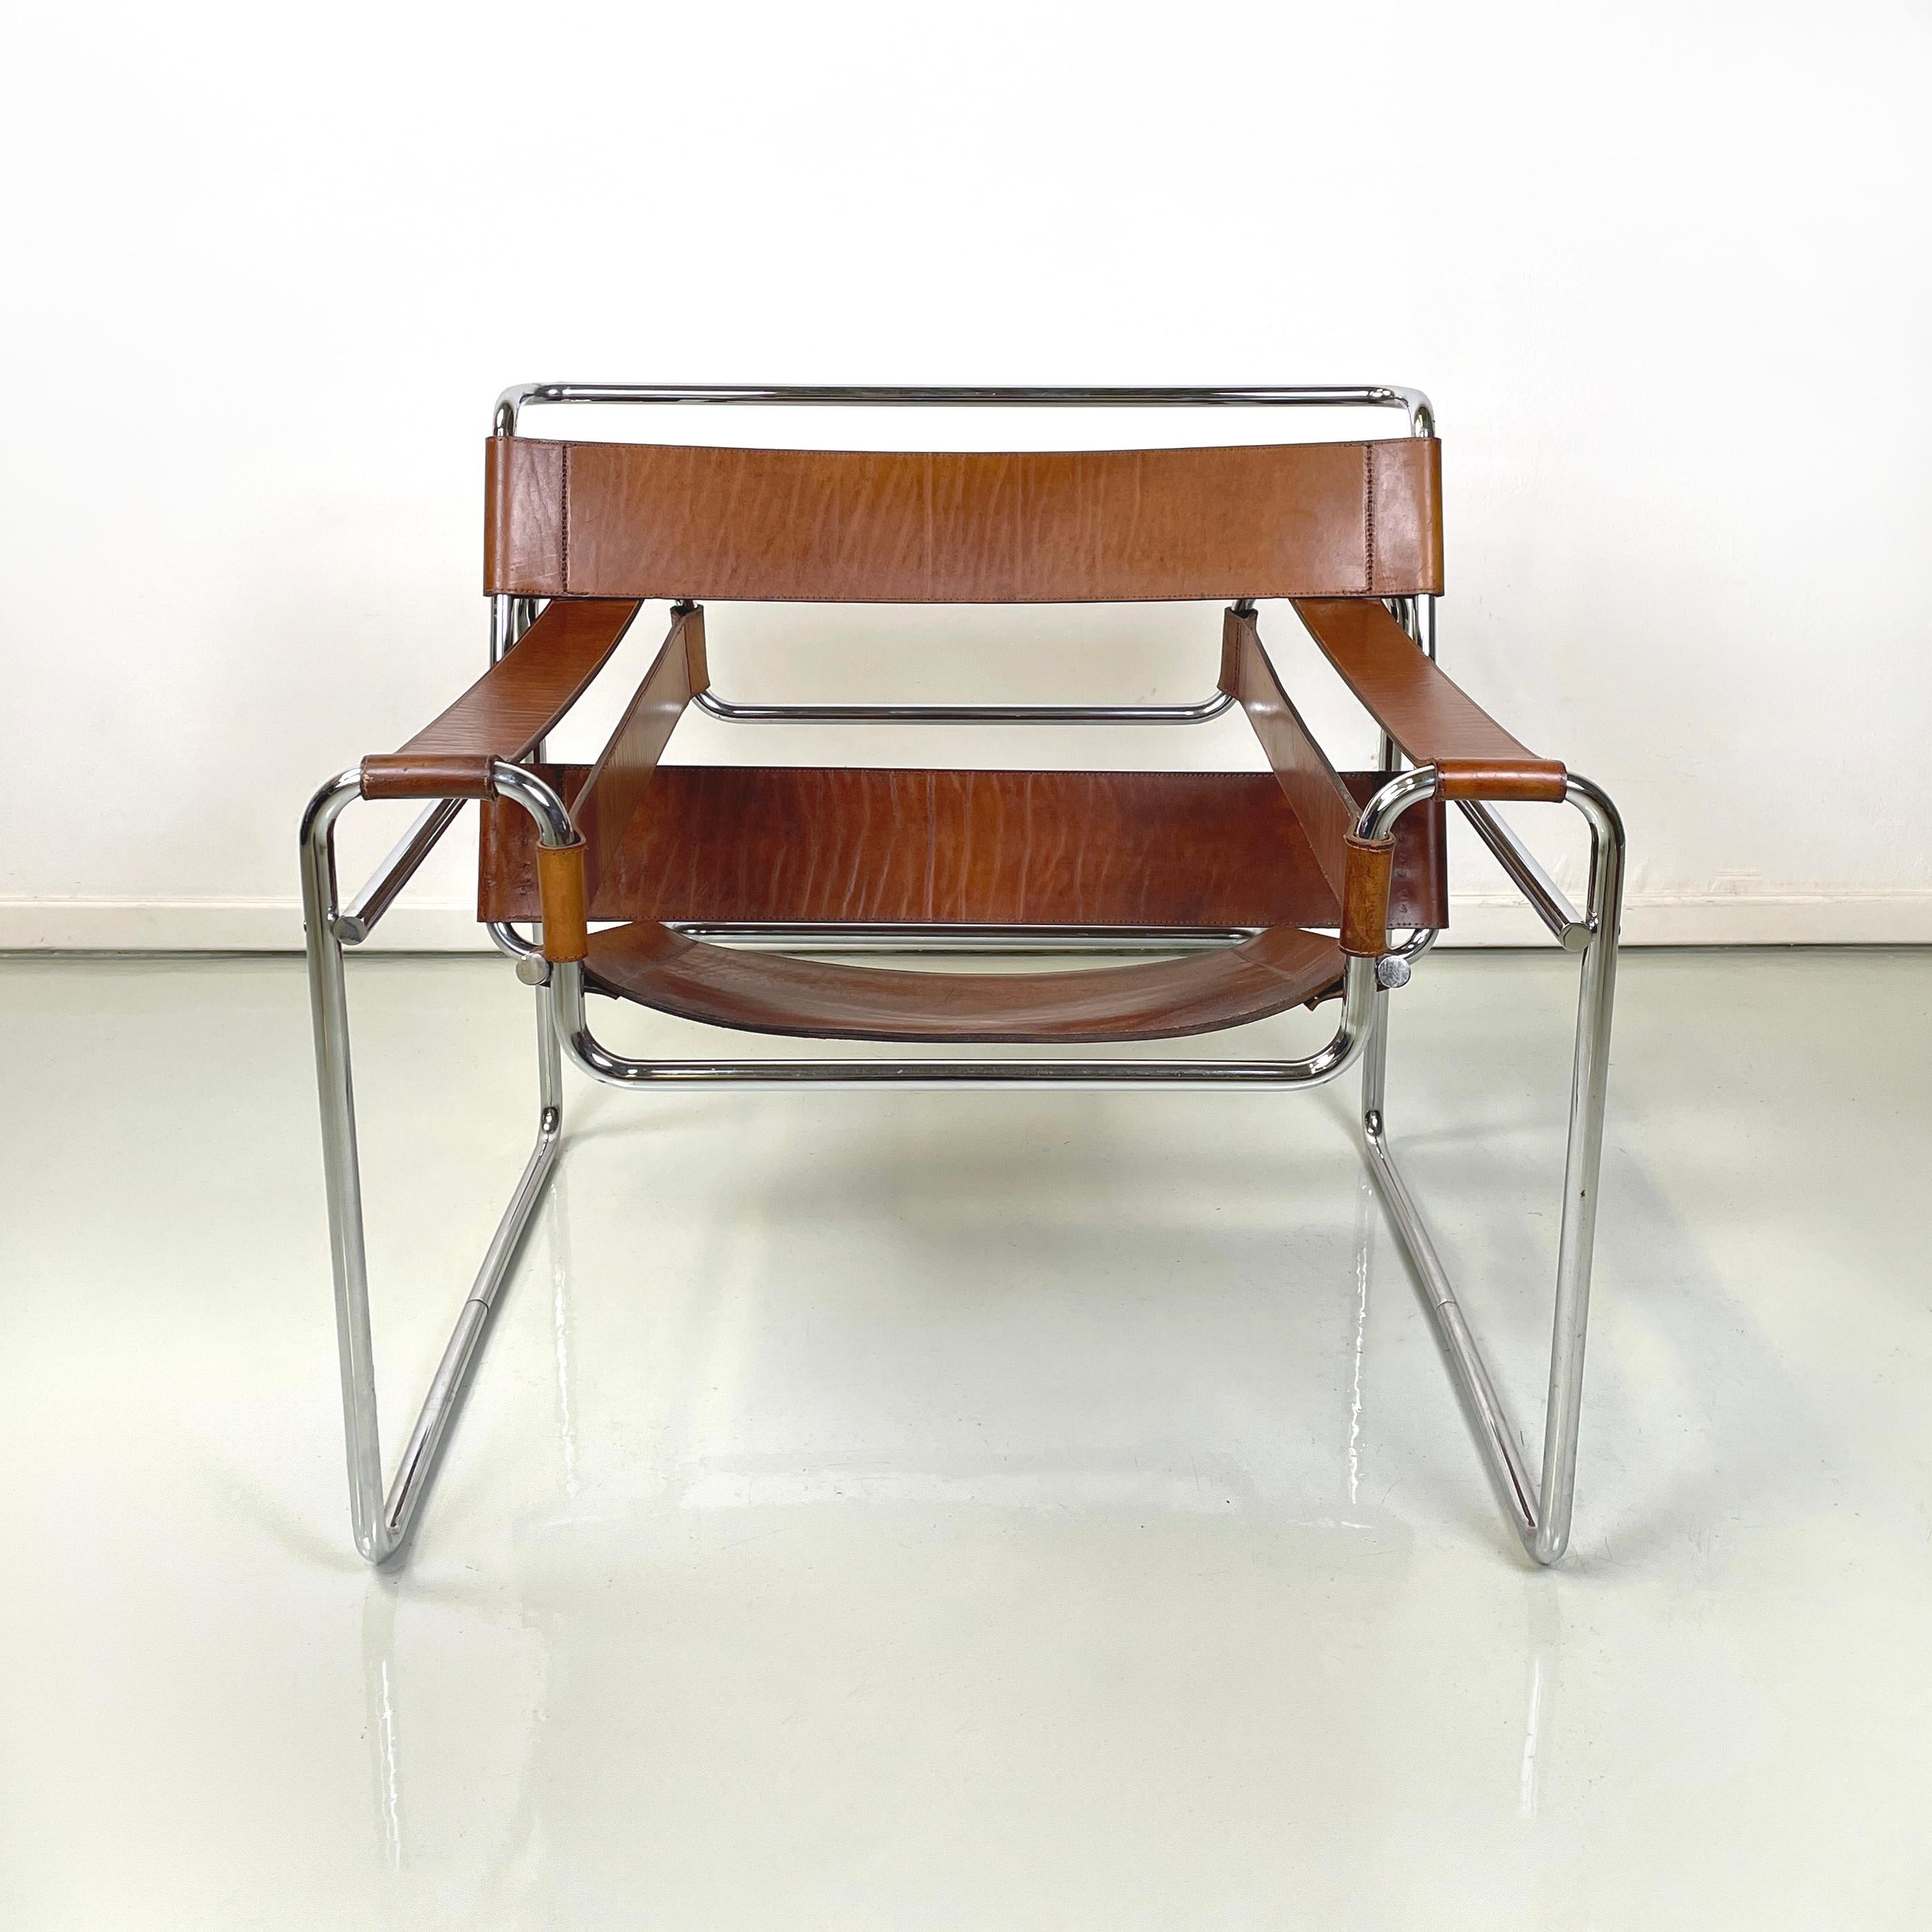 Italienische Moderne Sessel aus braunem Leder und verchromtem Stahl Wassily oder B3 von Marcel Breuer für Gavina, 1970er Jahre
Ikonischer Sessel Mod. Wassily oder B3 mit verchromtem Stahlrohrgestell. Die Rückenlehne, die Armlehnen und der Sitz sind